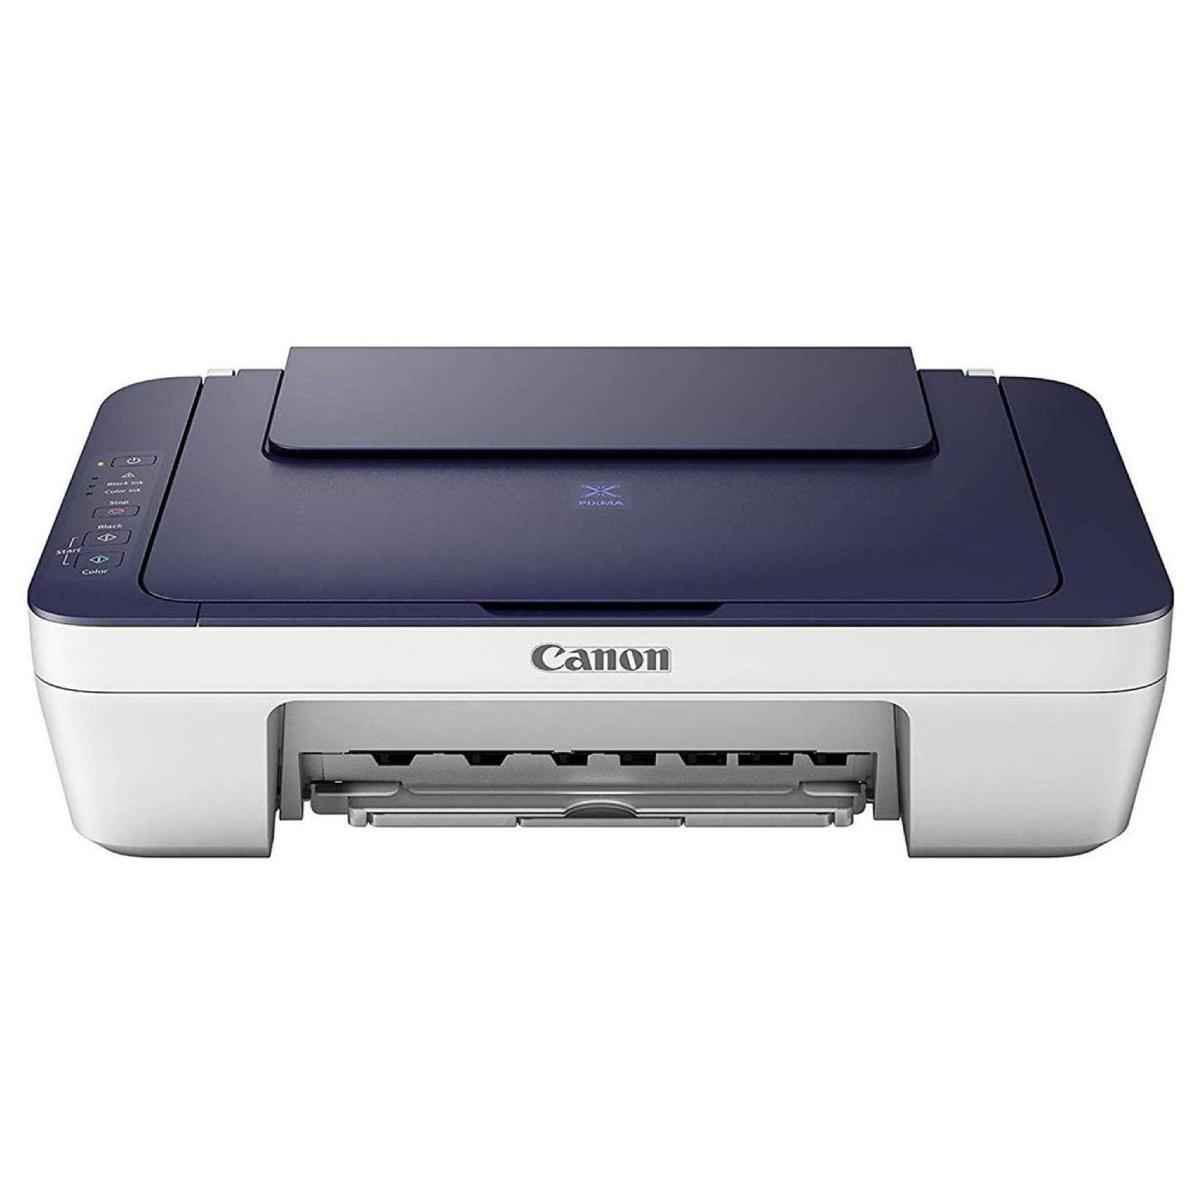 കാനോൻ Pixma MG2577S All-in-One Inkjet കളർ  Printer 